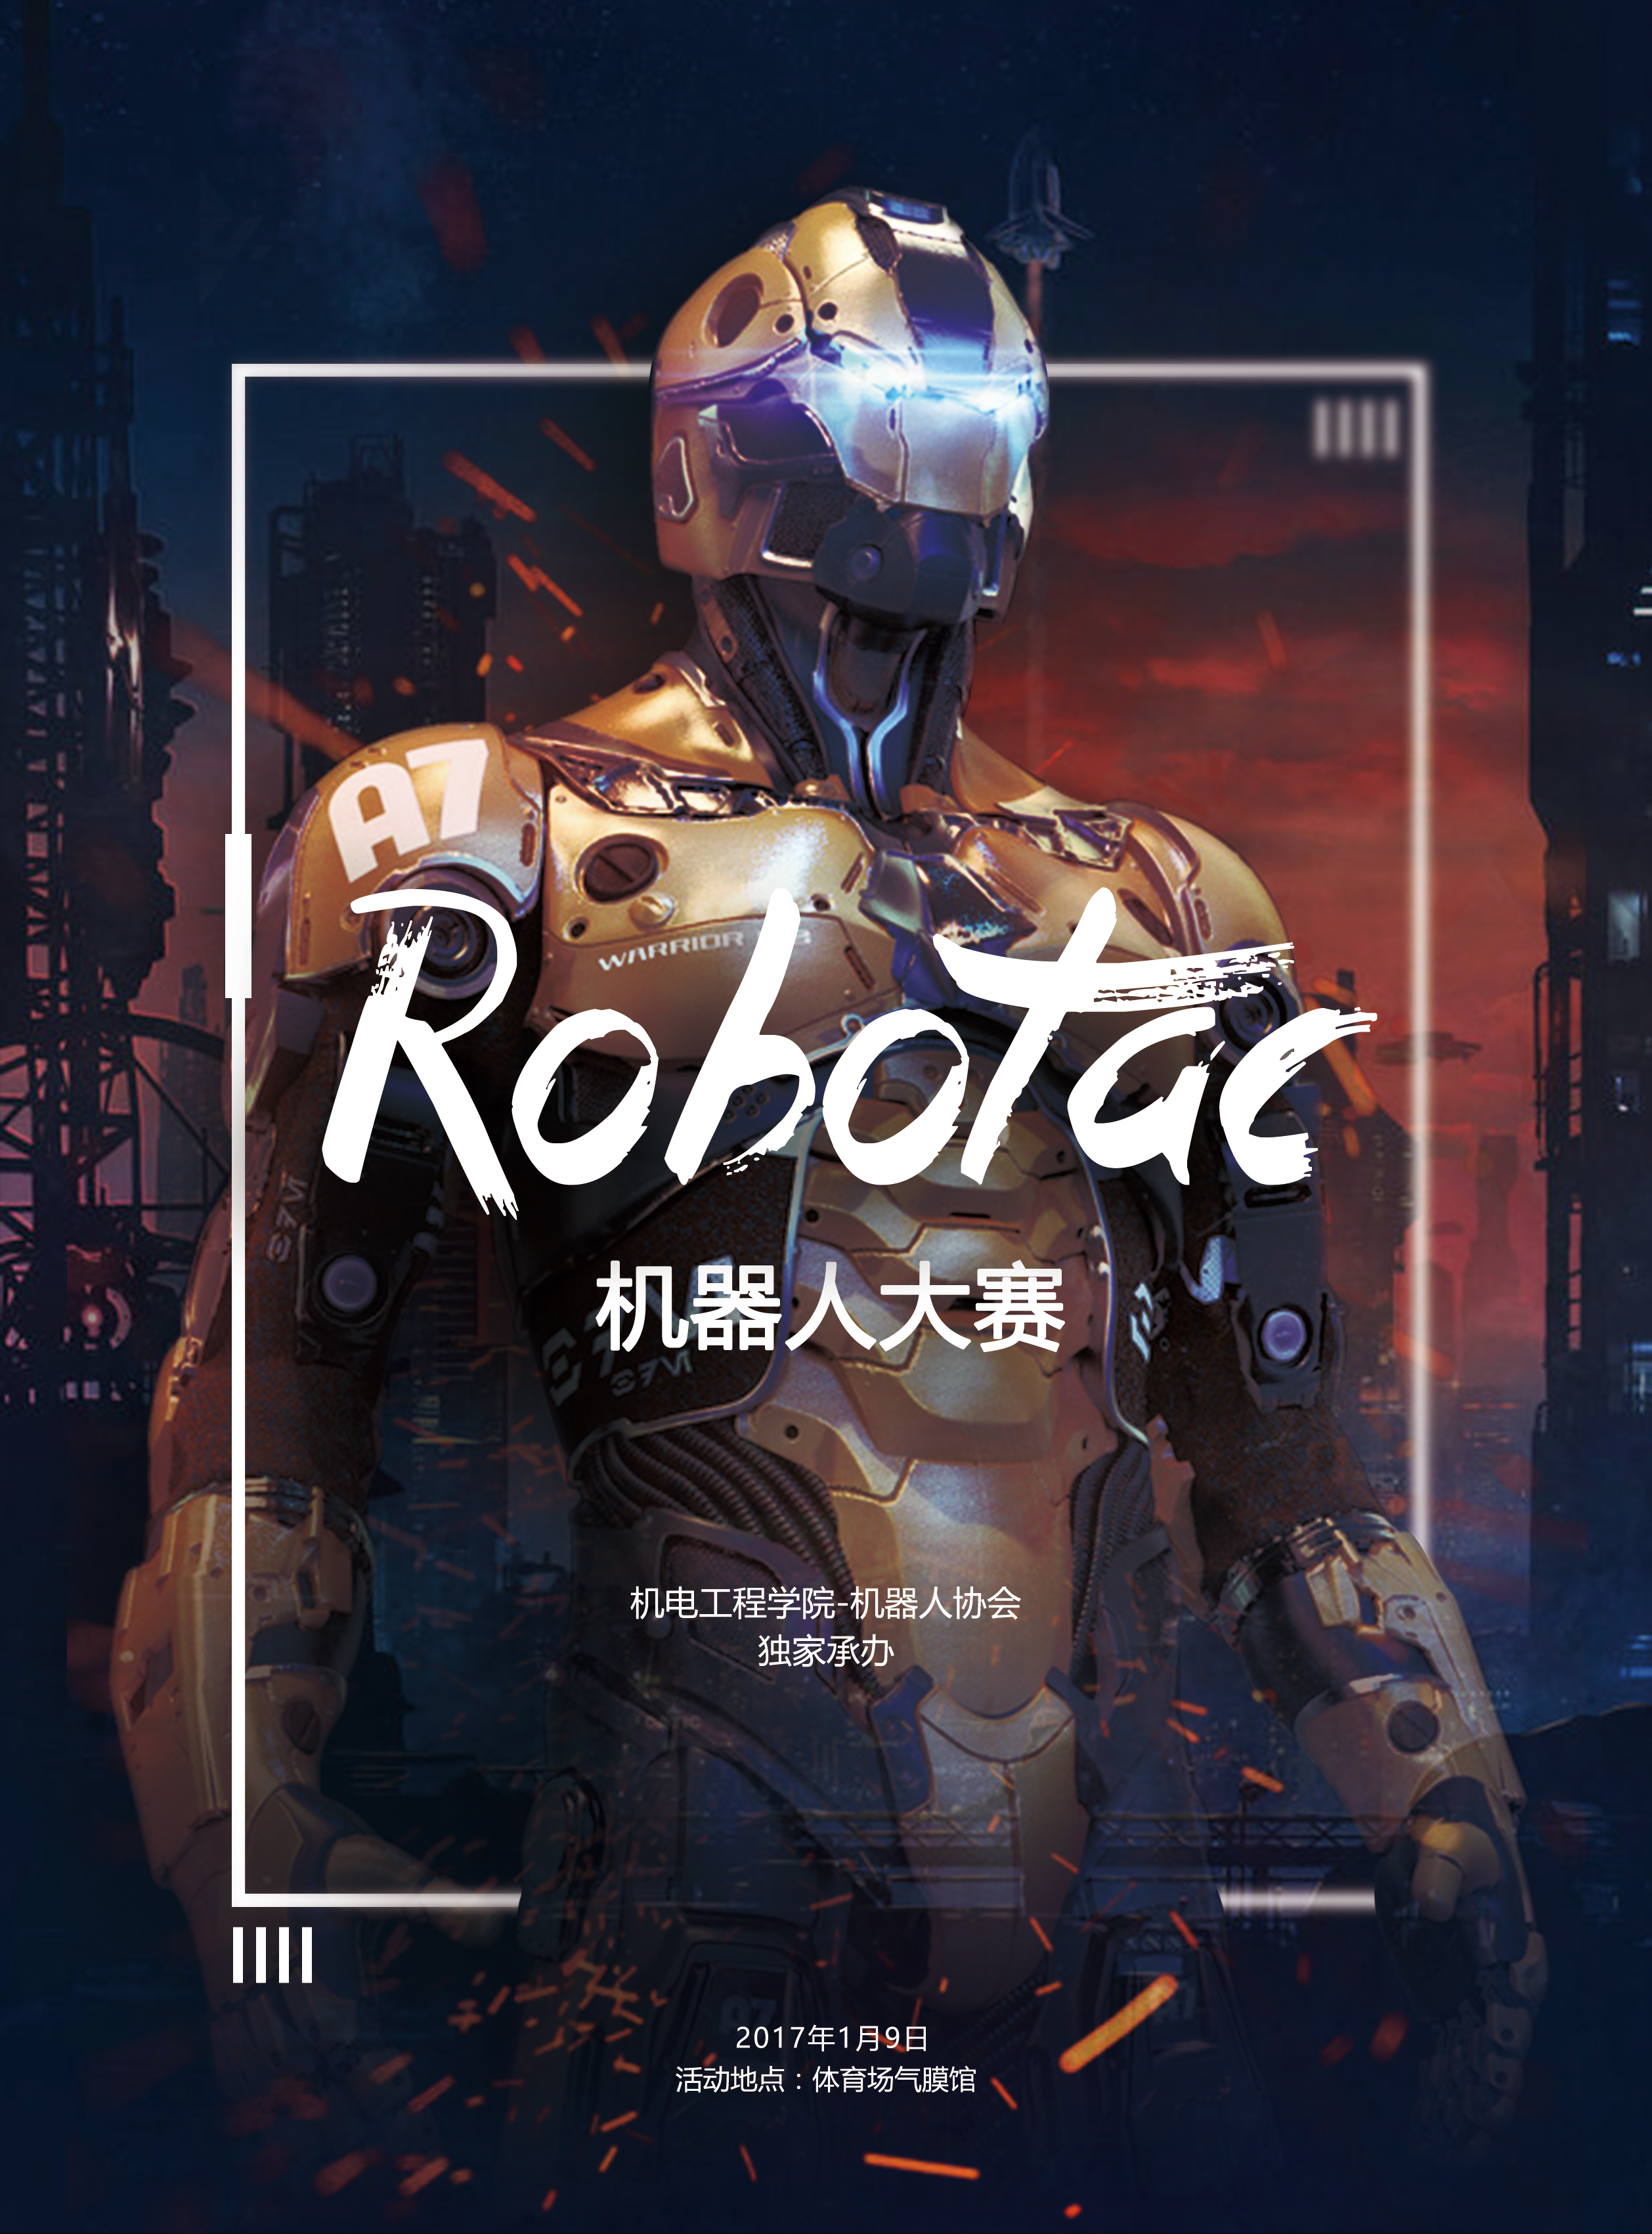 【robotac机器人 大赛】北京工业职业技术学院校内赛海报